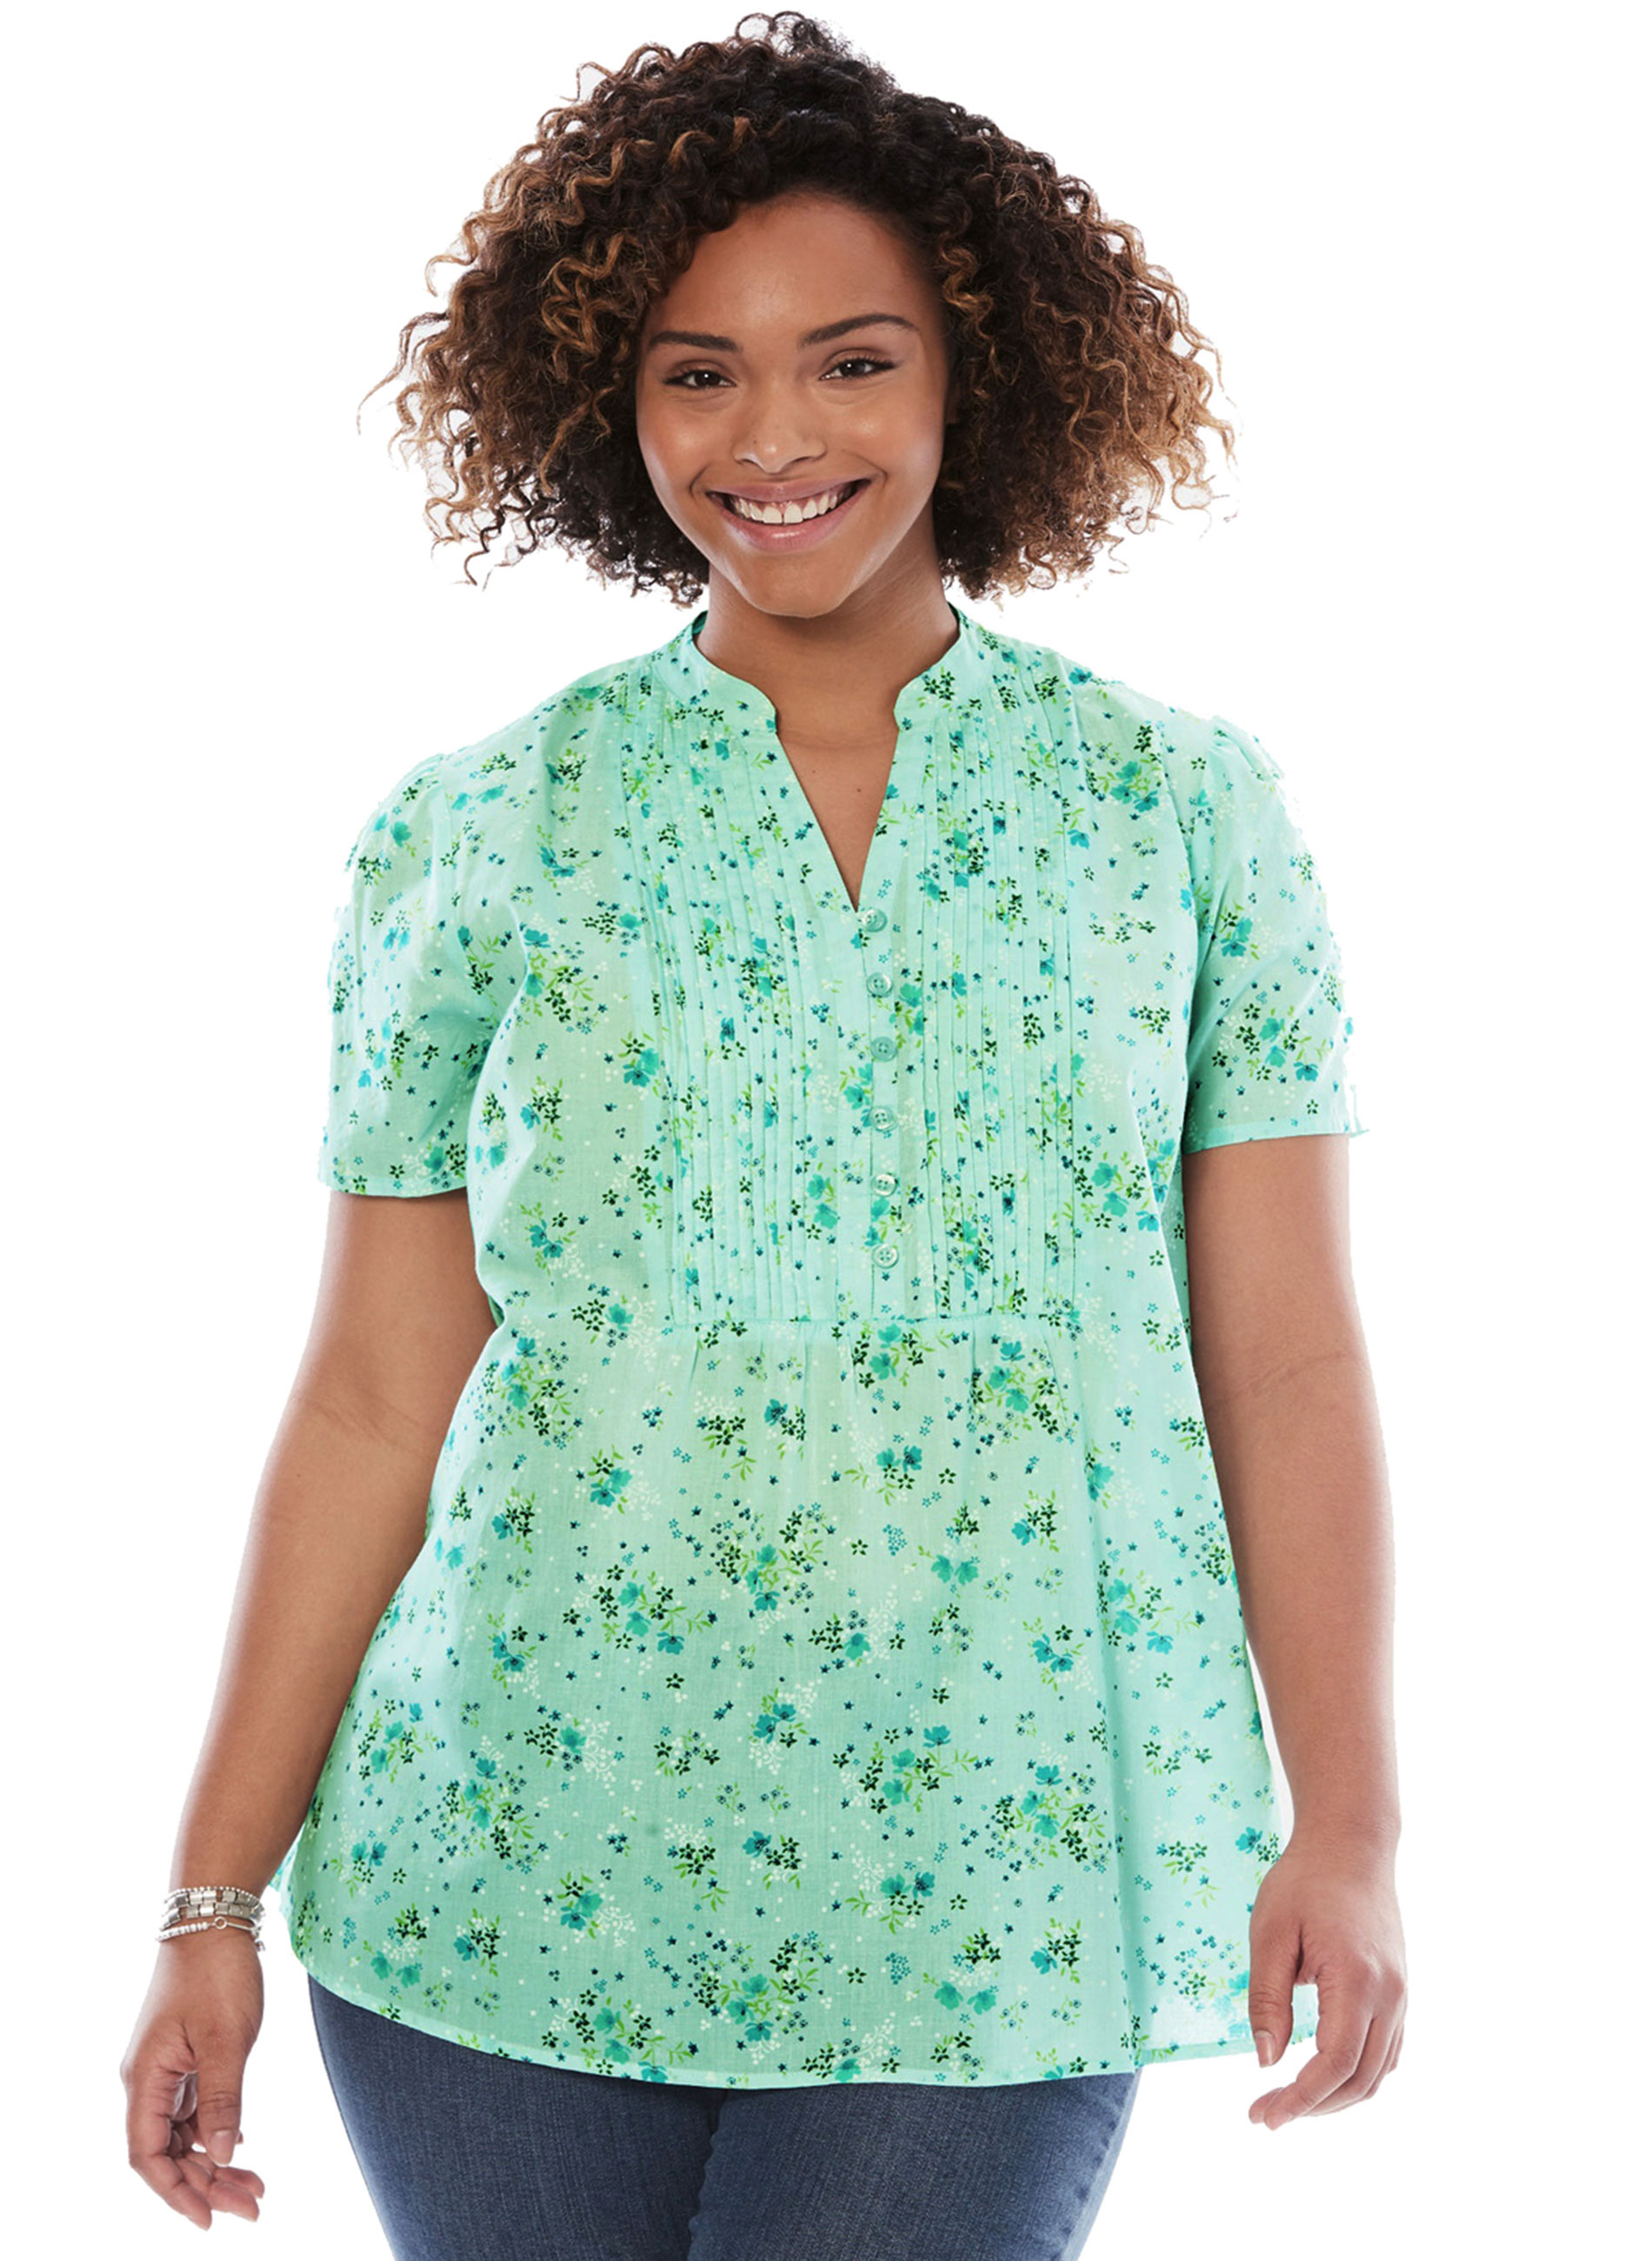 Φλοράλ πουκάμισο με μάο γιακά, πιέτα στο στήθος και κουμπιά που φτάνουν μέχρι την μέση, σε απαλό πράσινο χρώμα. Η βαμβακερή του σύνθεση το καθιστά ιδανικό για τις καλοκαιρινές βόλτες πρωί ή βράδυ.